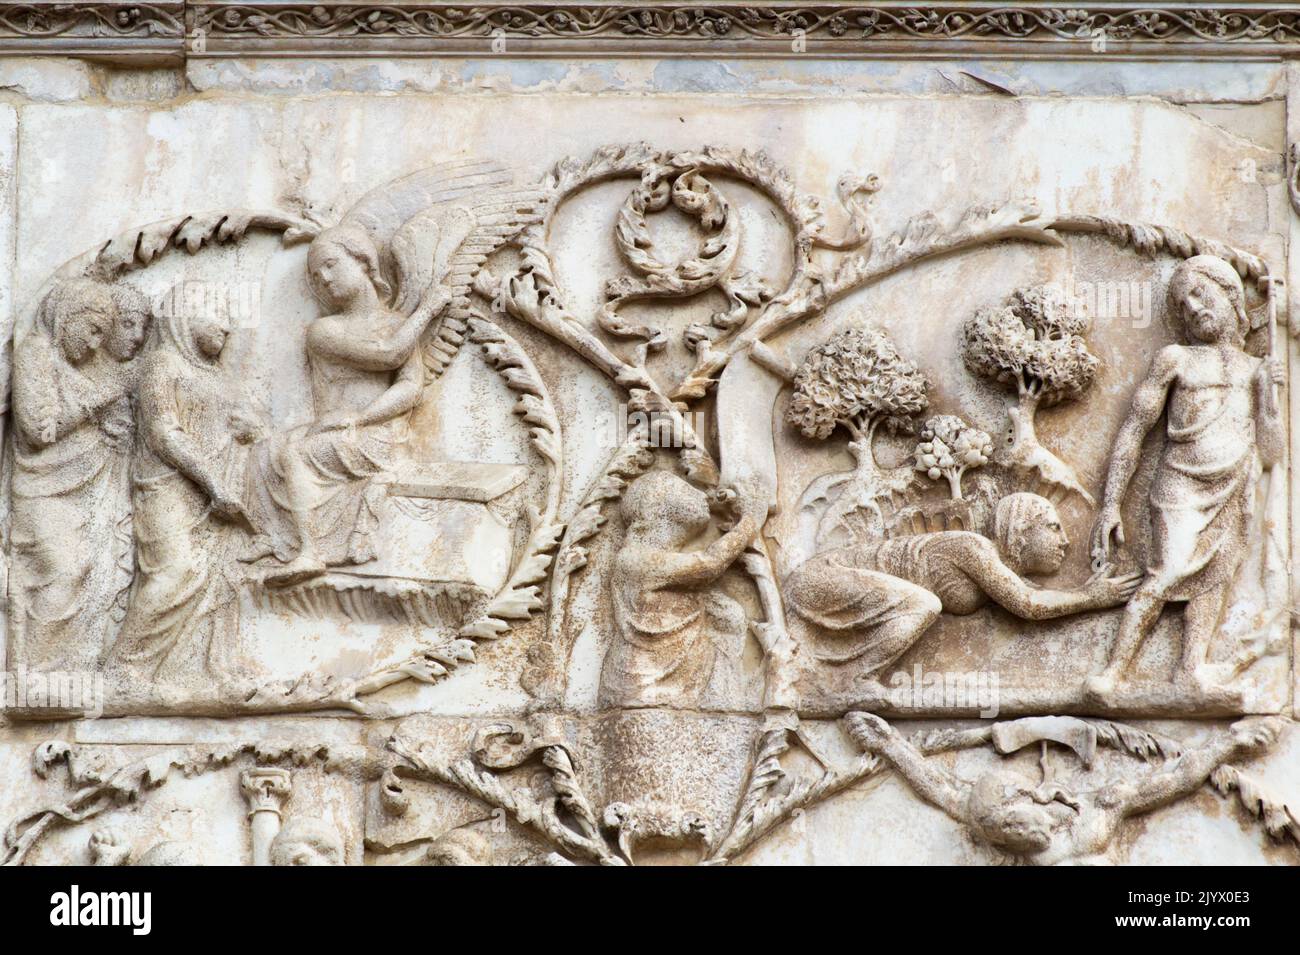 Auferstehung und Noli me tangere Szenen - Bas-Relief aus der 3. Säule (Neues Testament) - Fassade der Kathedrale von Orvieto - Umbrien - Italien Stockfoto